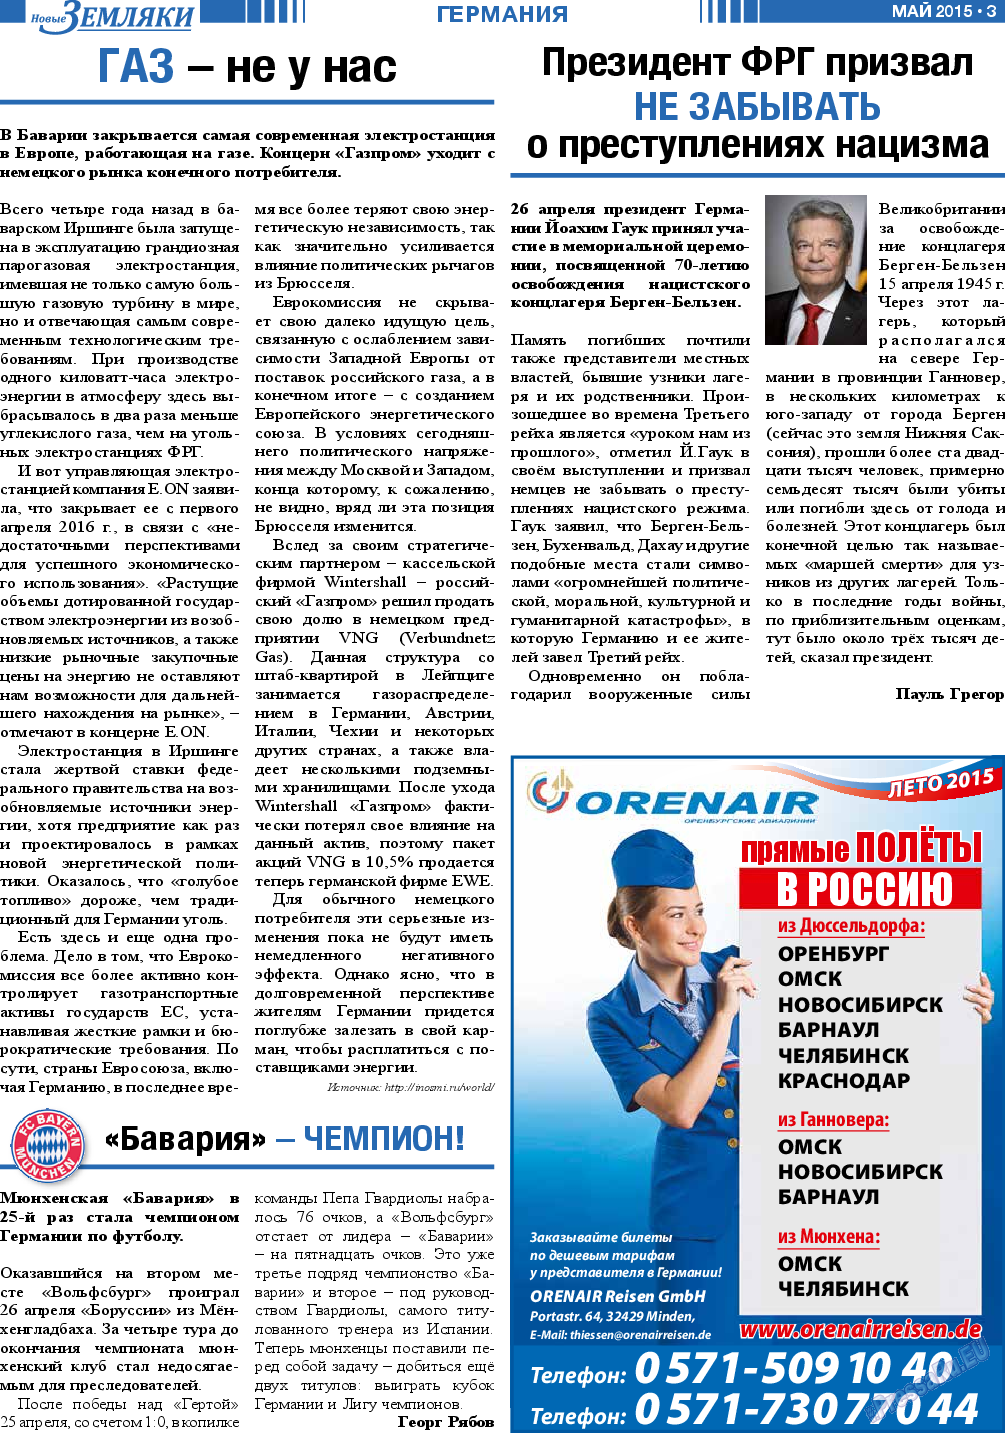 Новые Земляки, газета. 2015 №5 стр.3